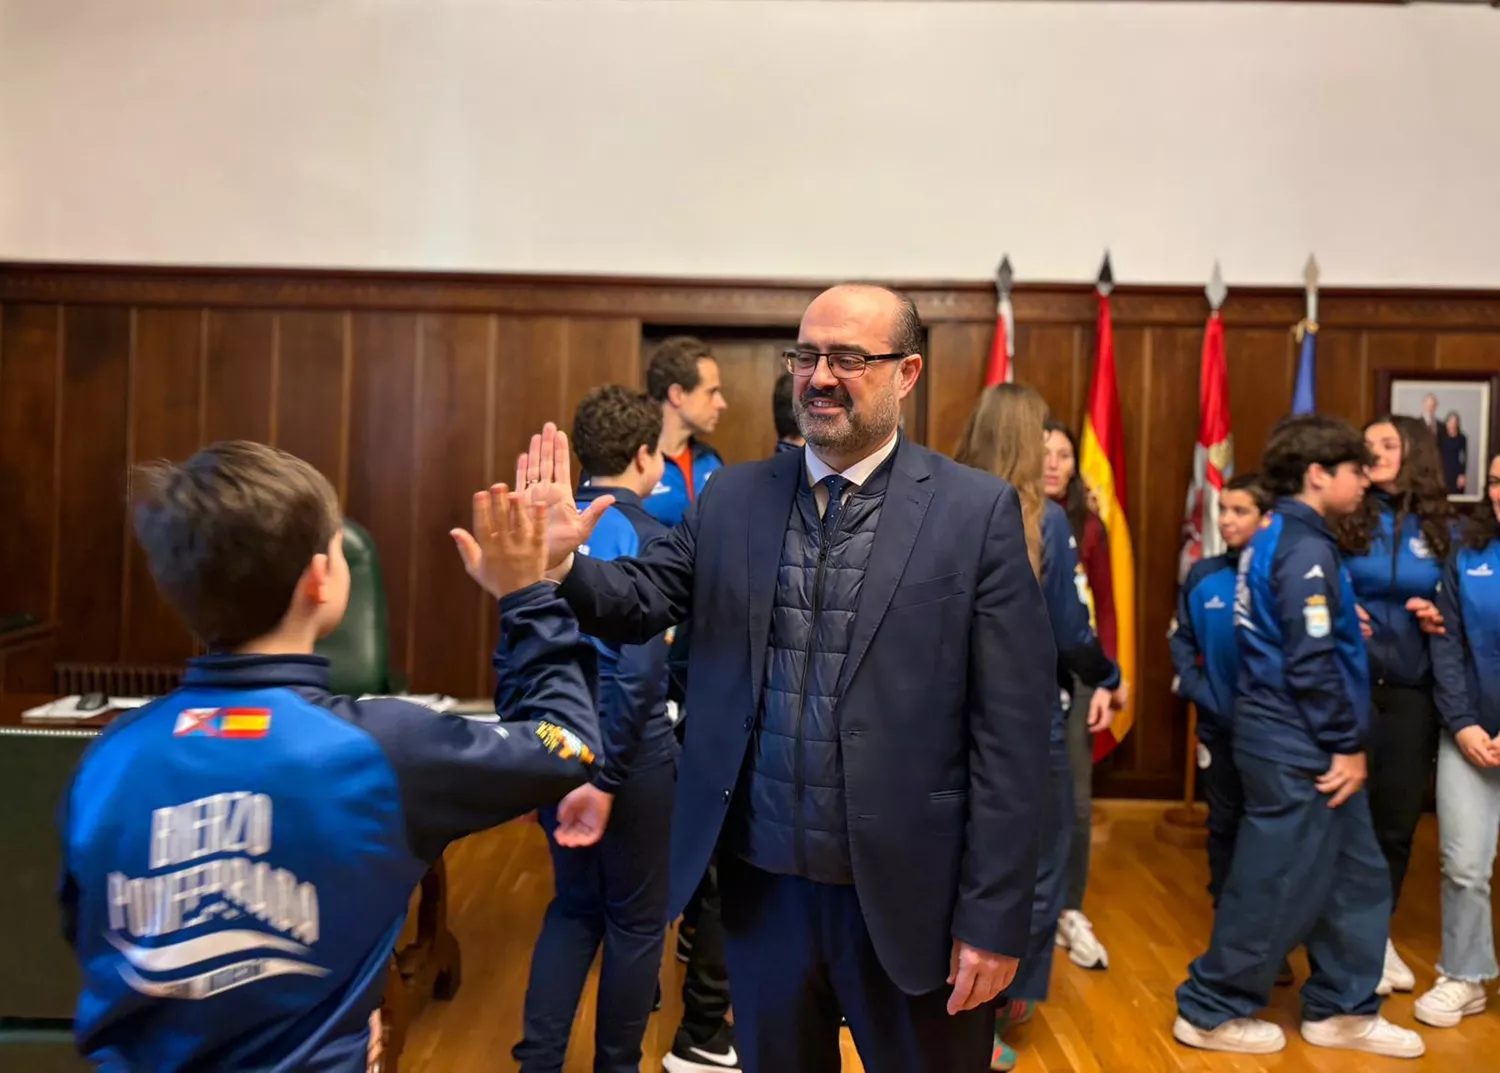 Morala reconoce los méritos del Club Natación Bierzo: "El deporte ponferradino es un ejemplo y una referencia"